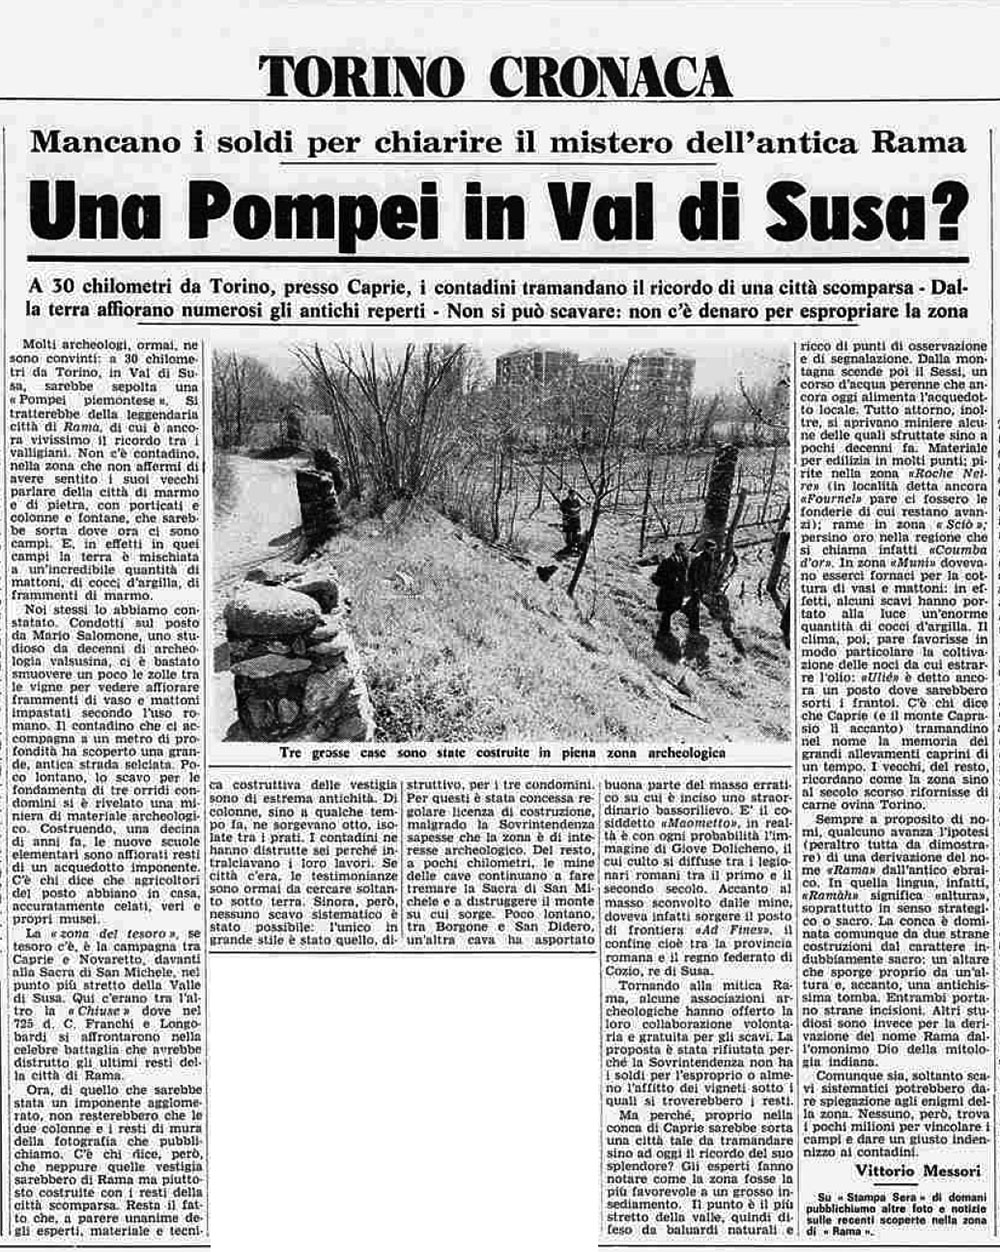 Una Pompei in Valle di Susa? Stampa Sera, 7 aprile 1975 (Archivio Storico La Stampa)